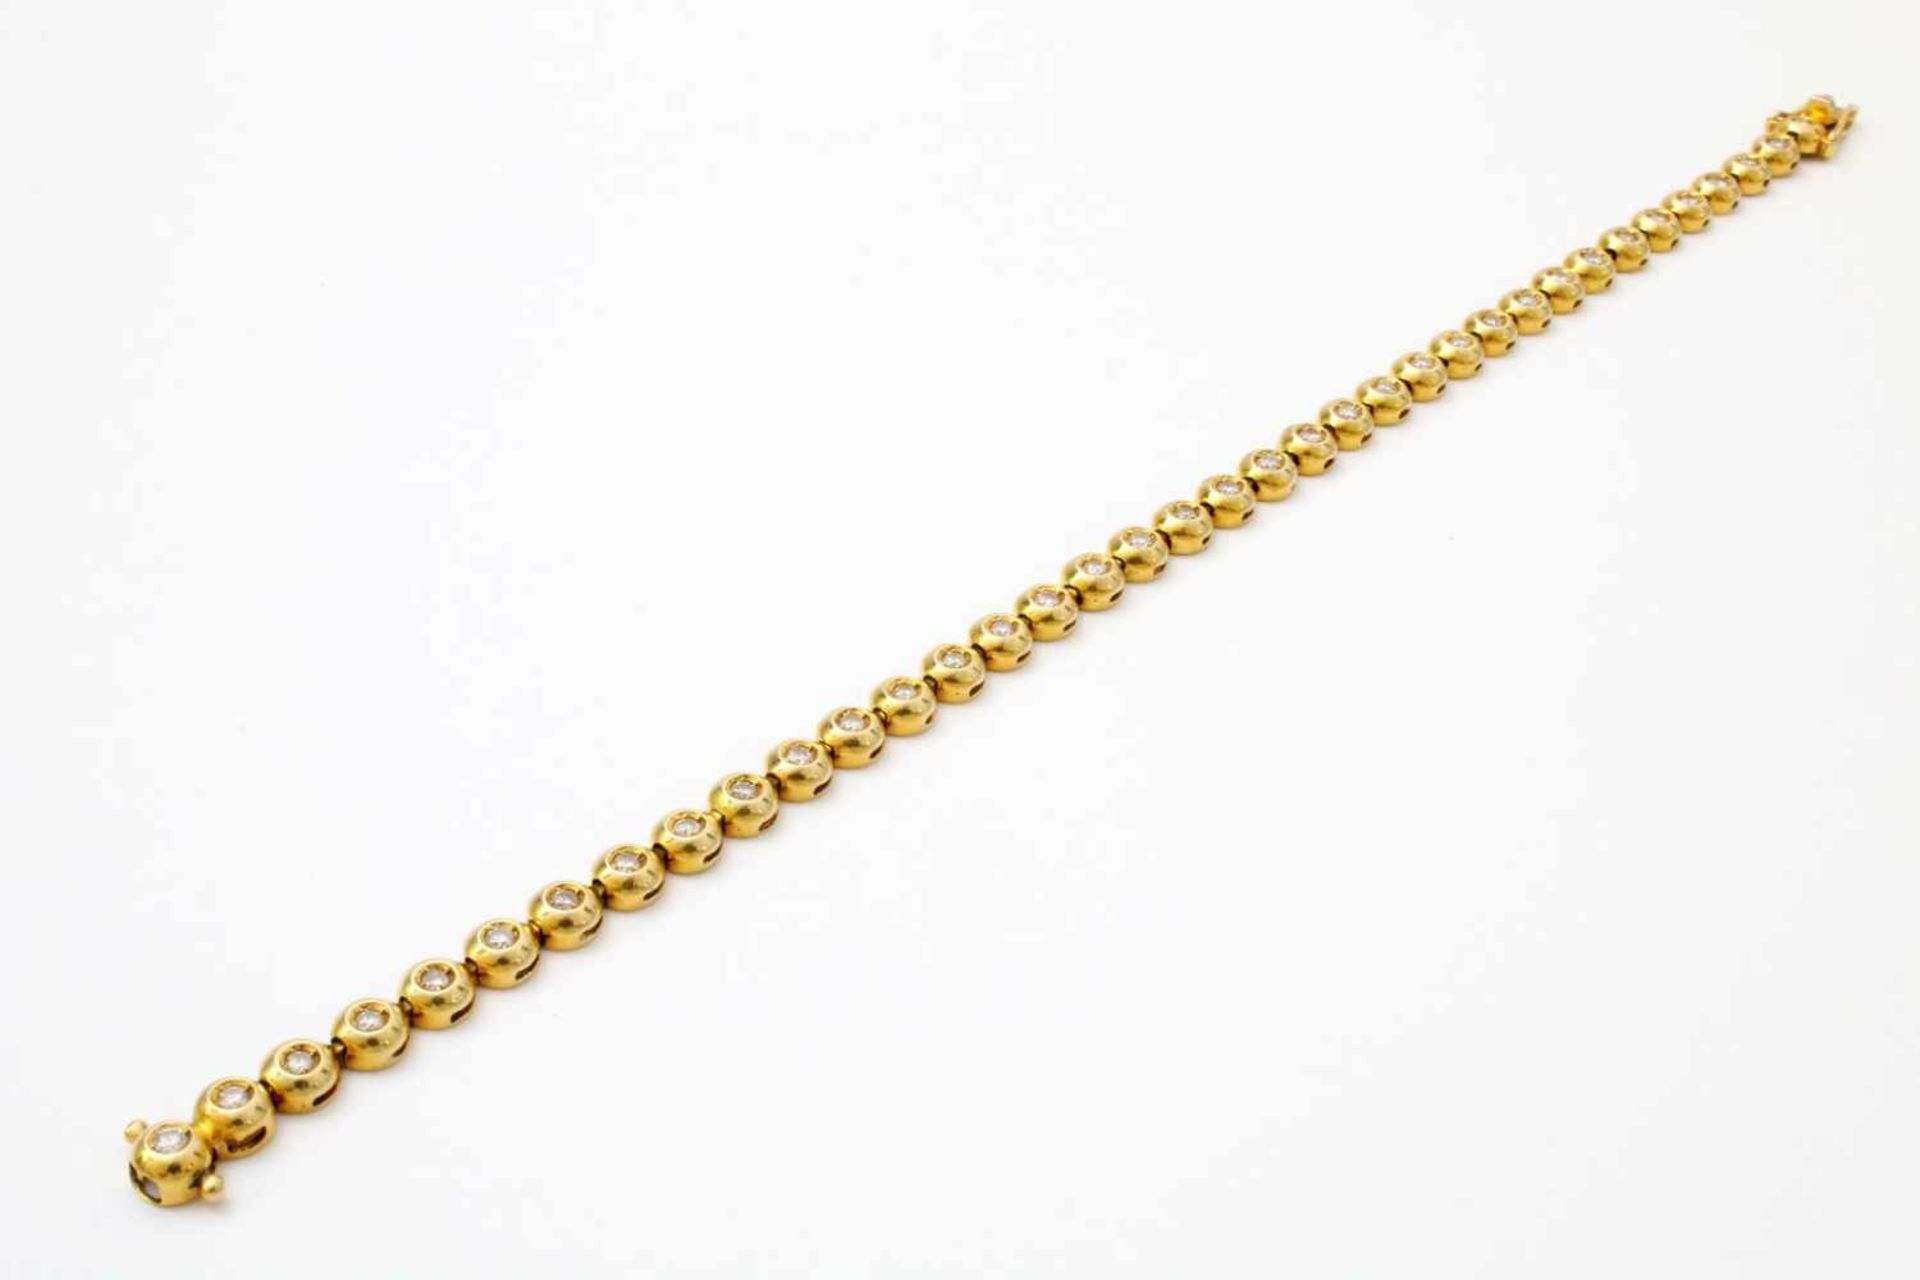 Gelbgold - Tennisarmband mit 36 Brillanten GG 585, zus. ca. 1 ct. Brillanten. Länge: 20 cm, Gewicht: